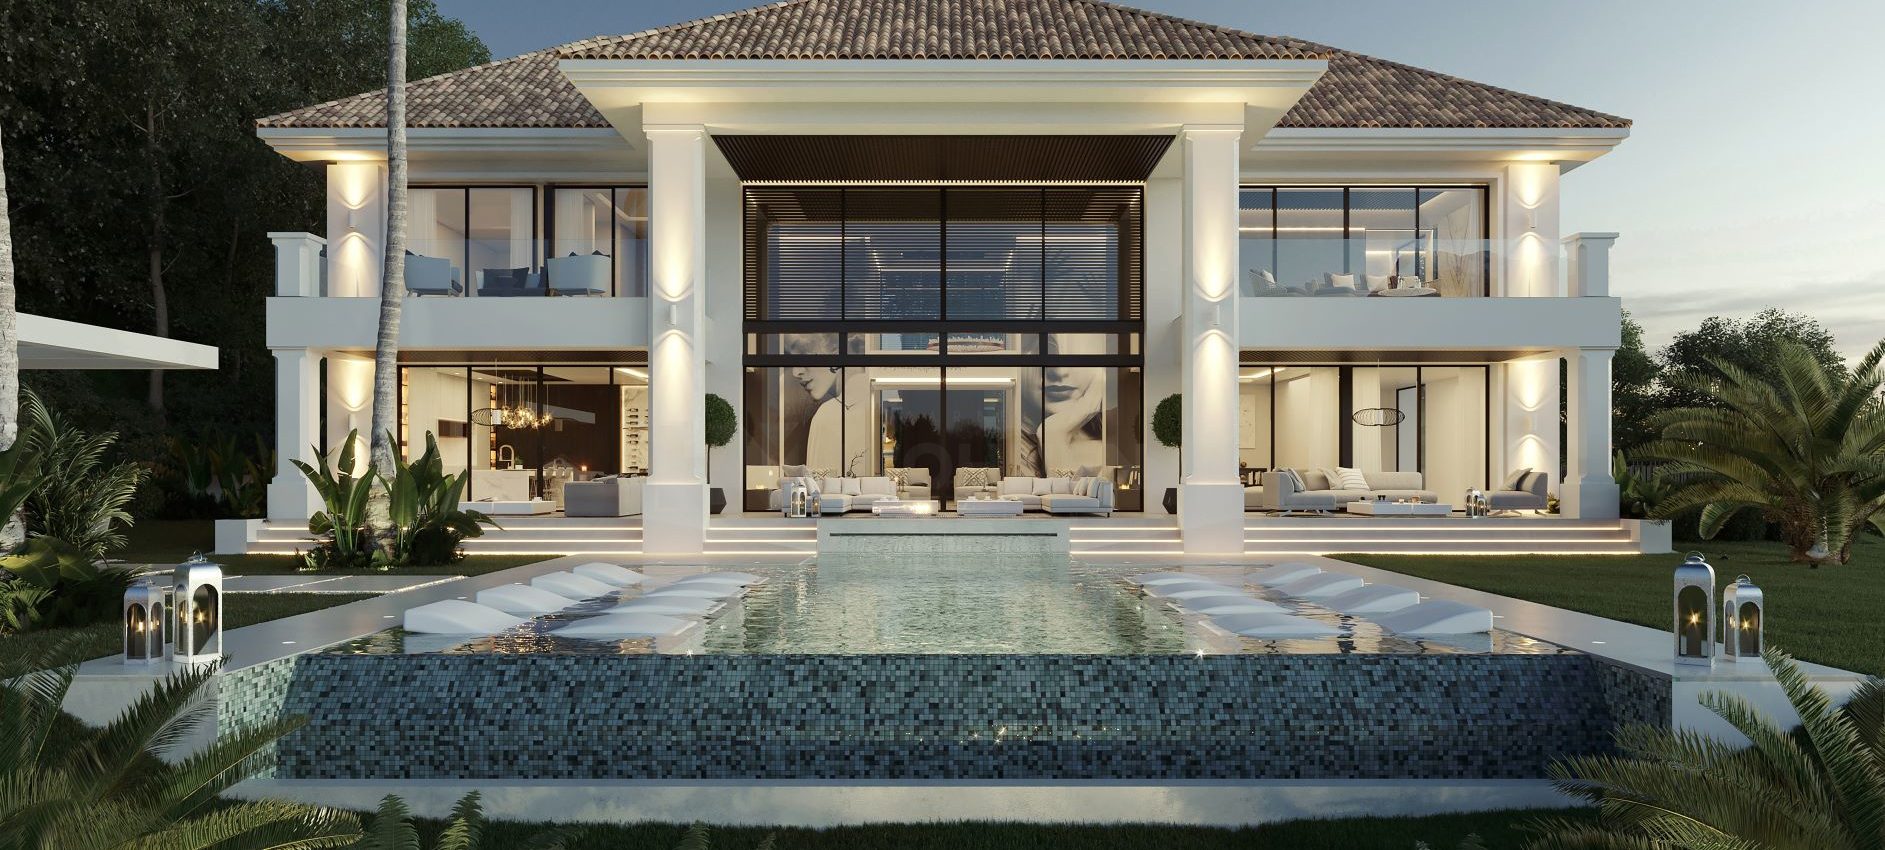 Neubau Villa in einer zeitgenössischer mediterraner Architektur – Marbella